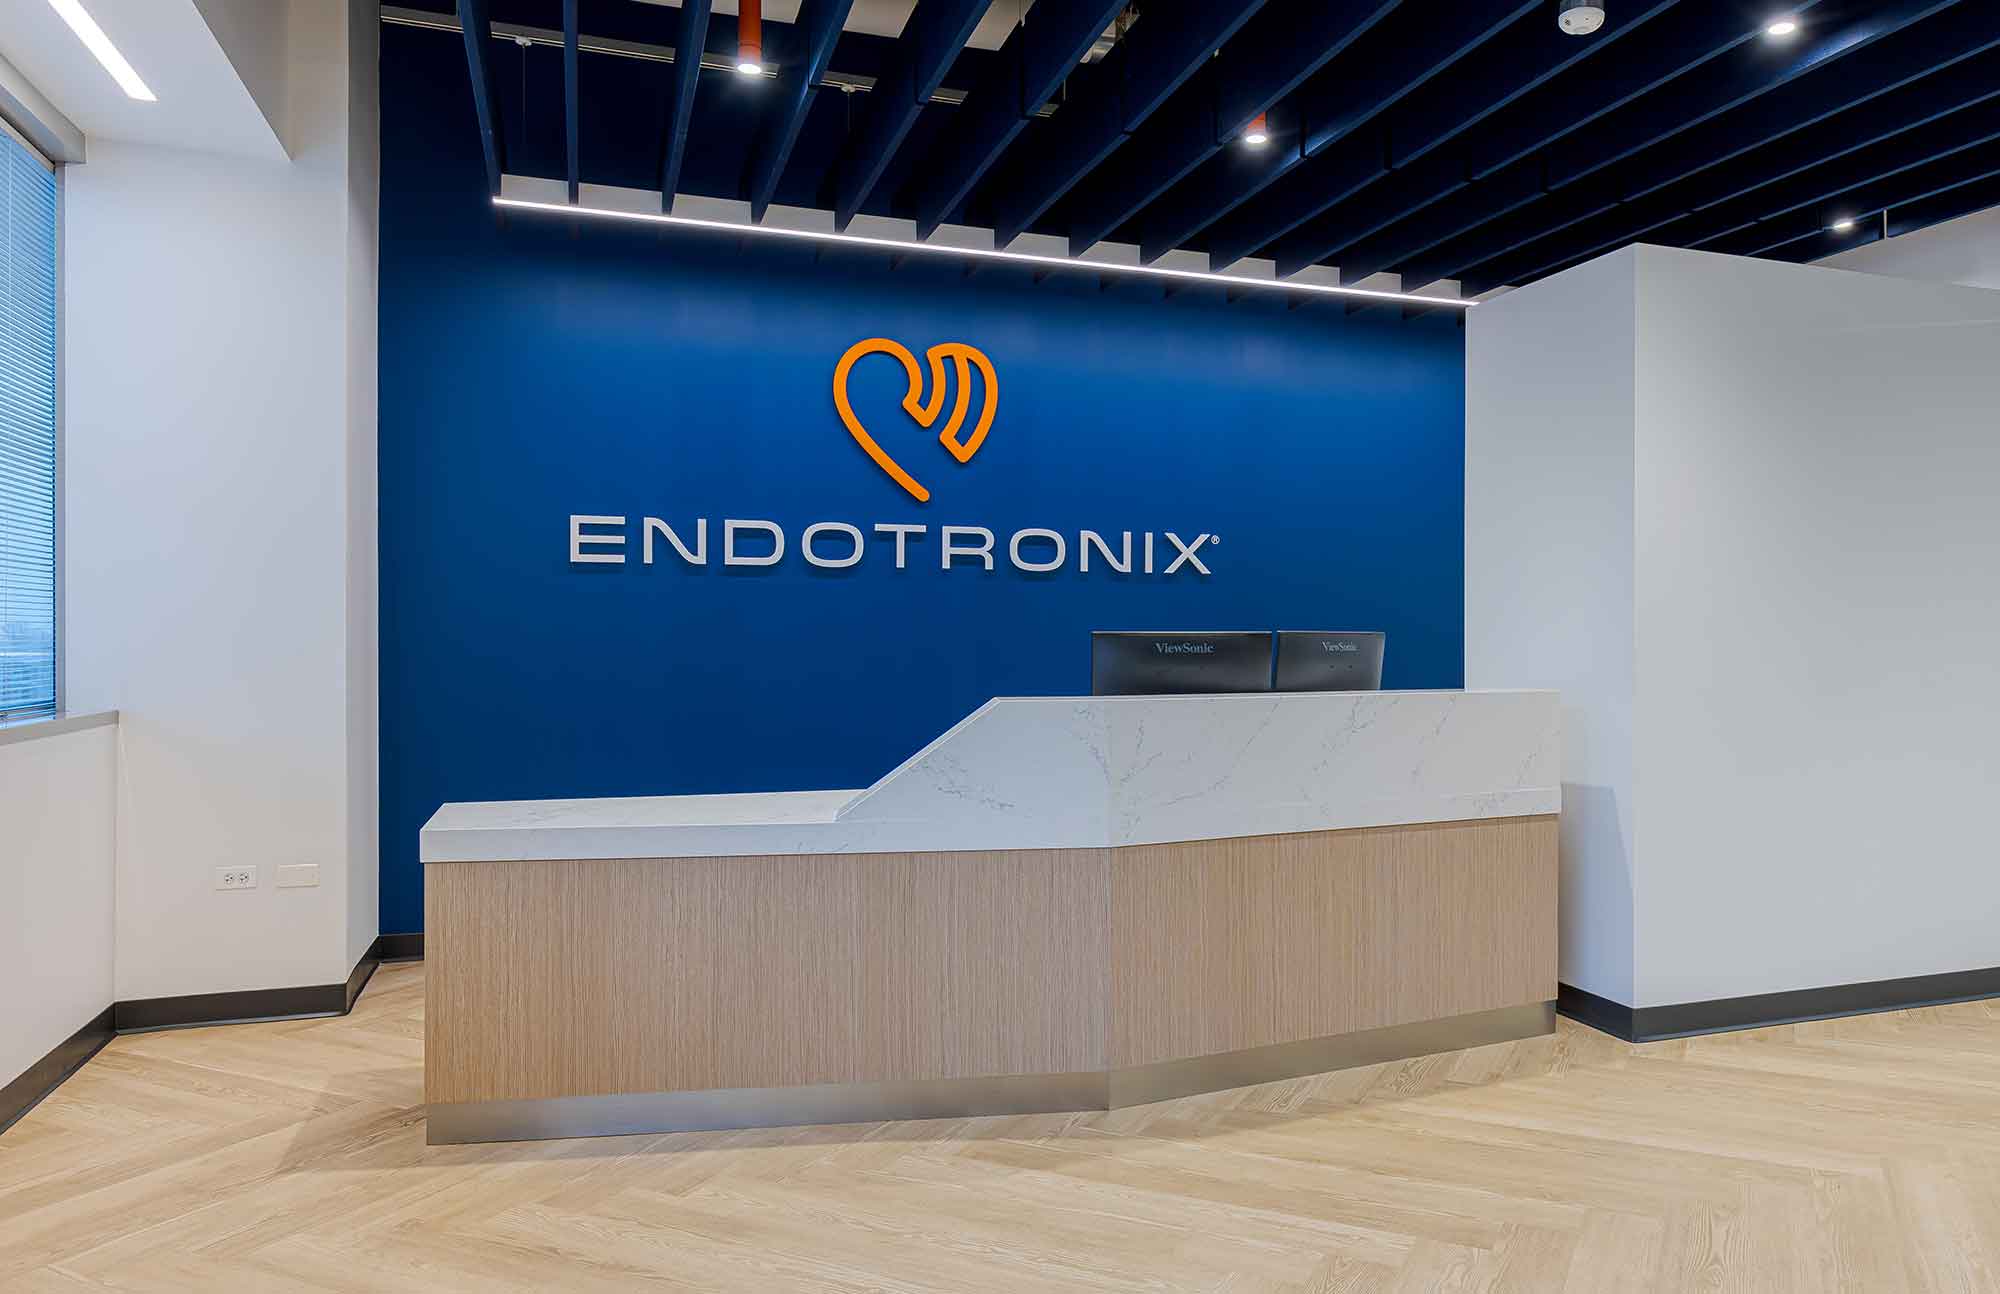 Endotronix